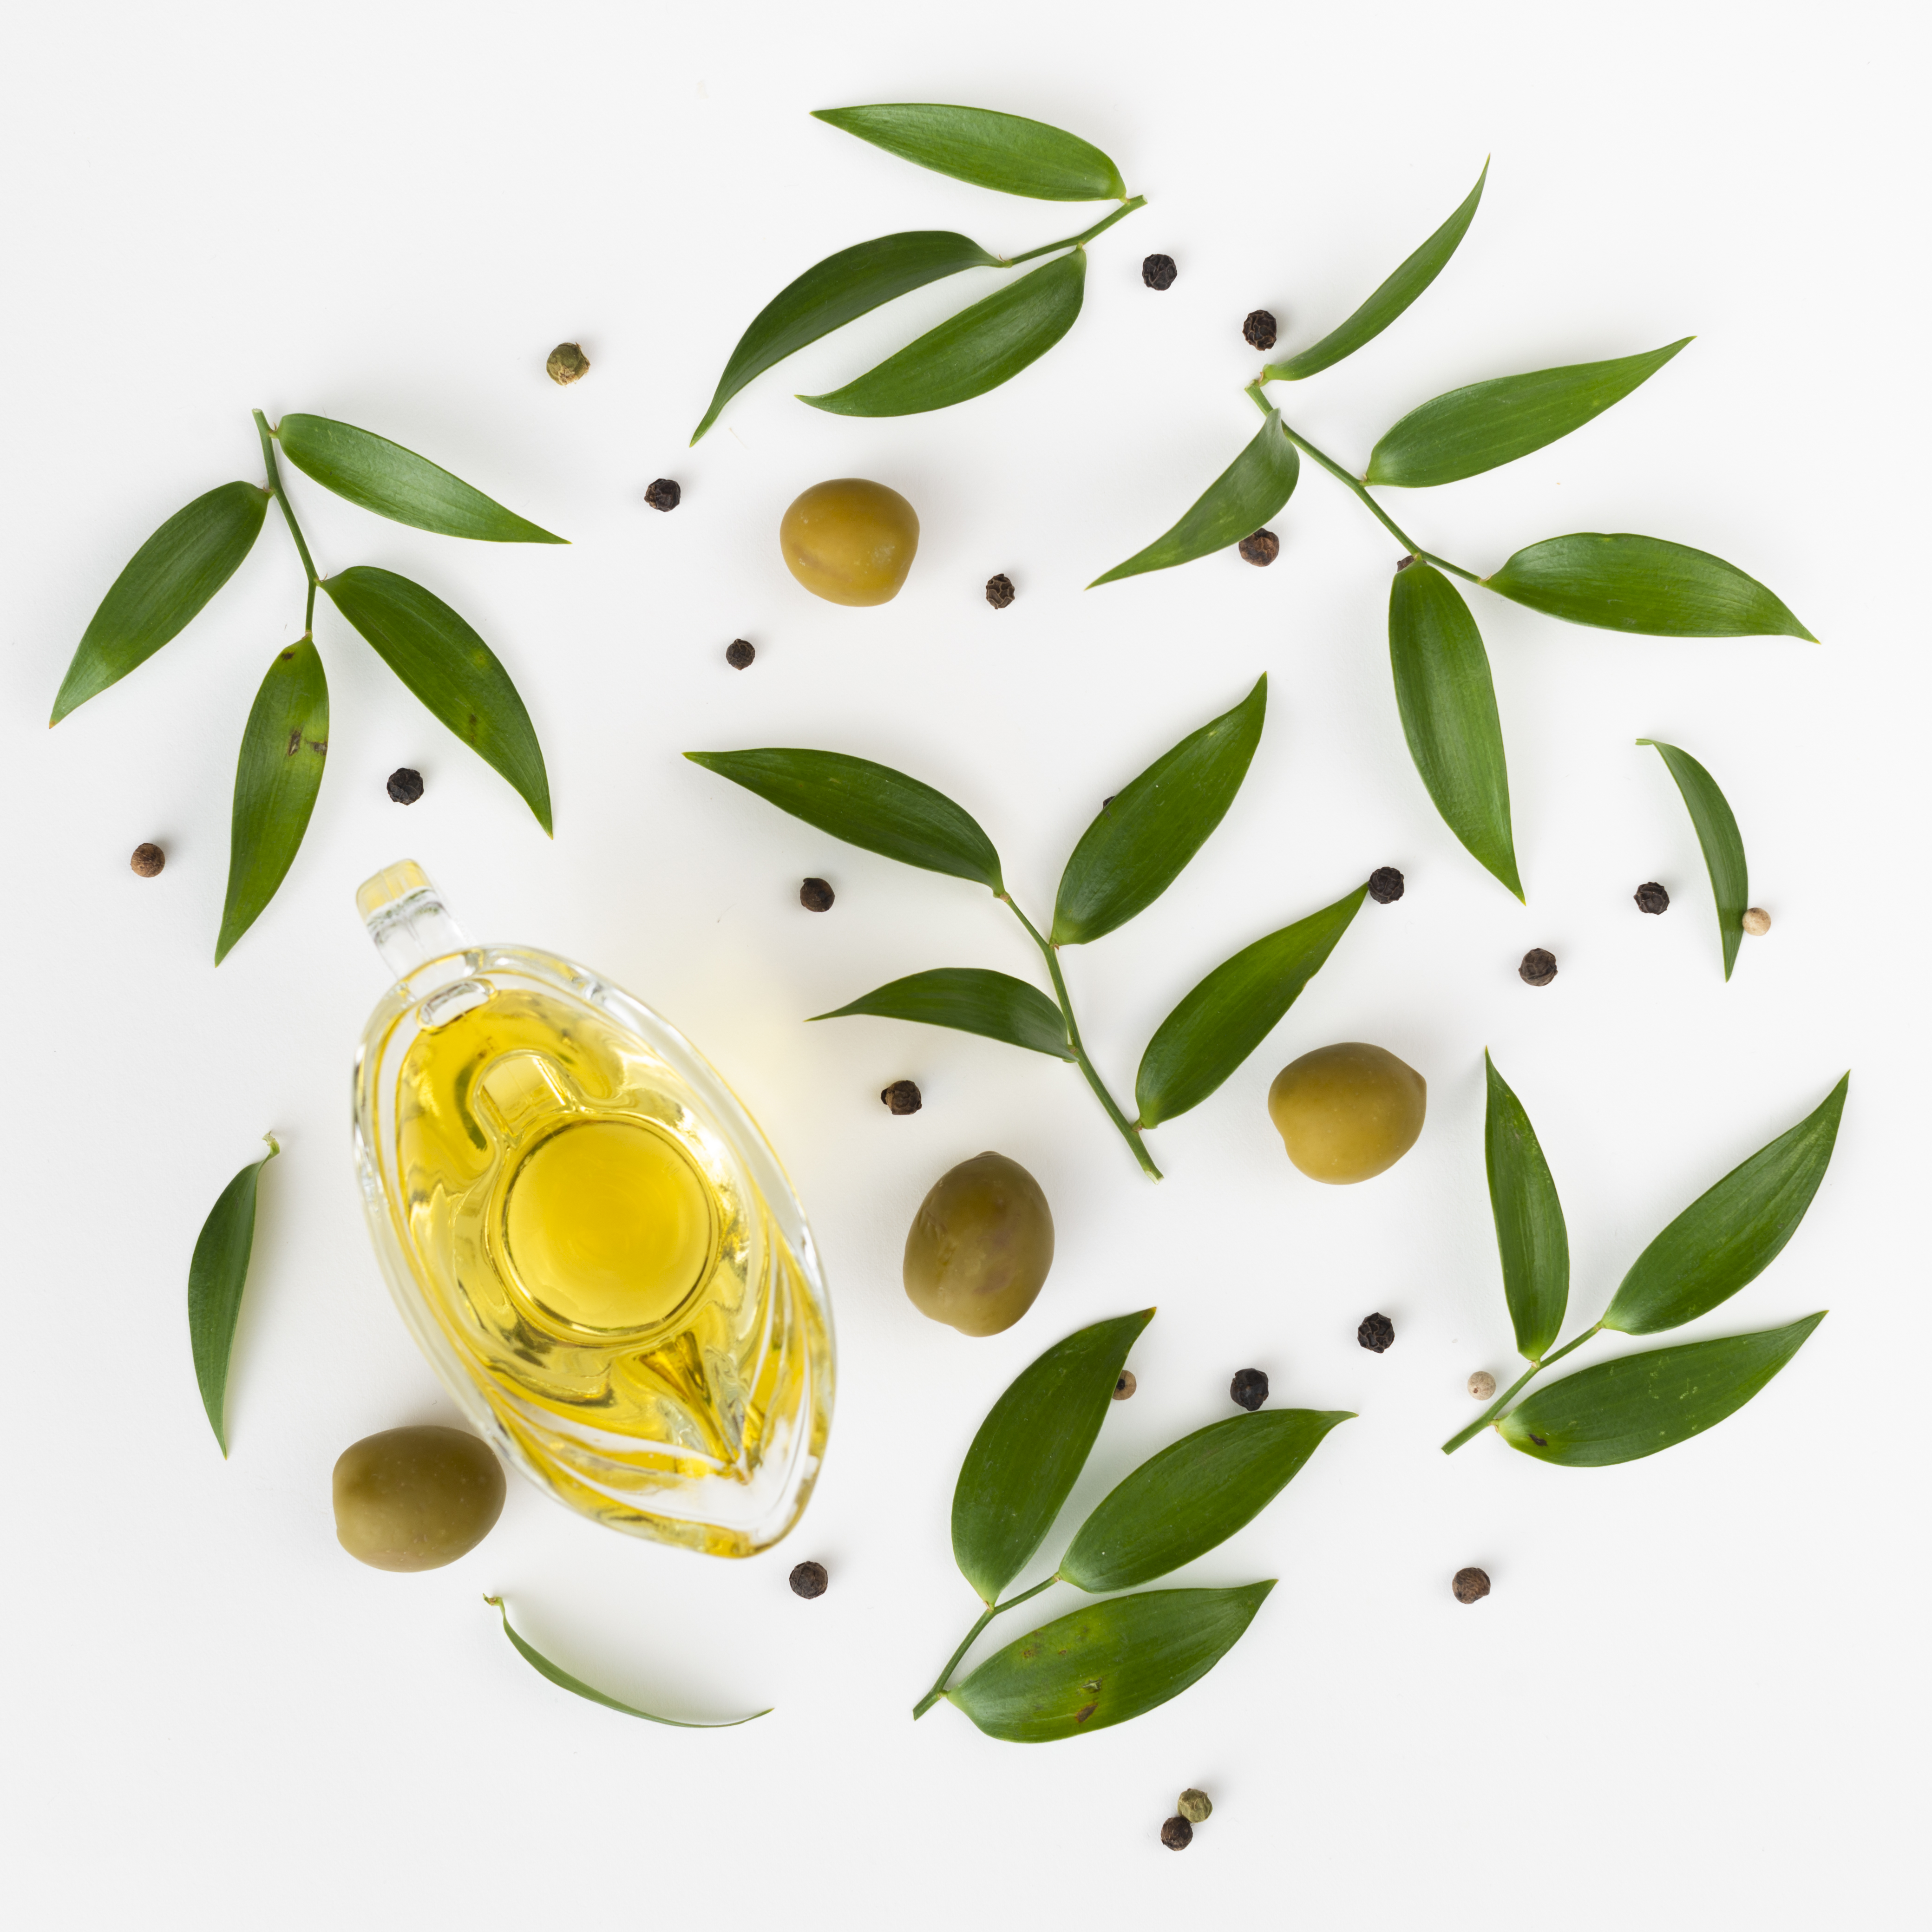 Топ оливкового масла. Оливковое масло вид сверху. Оливки на белом фоне. Оливковое масло для фотошопа. Растительное масло вид сверху.